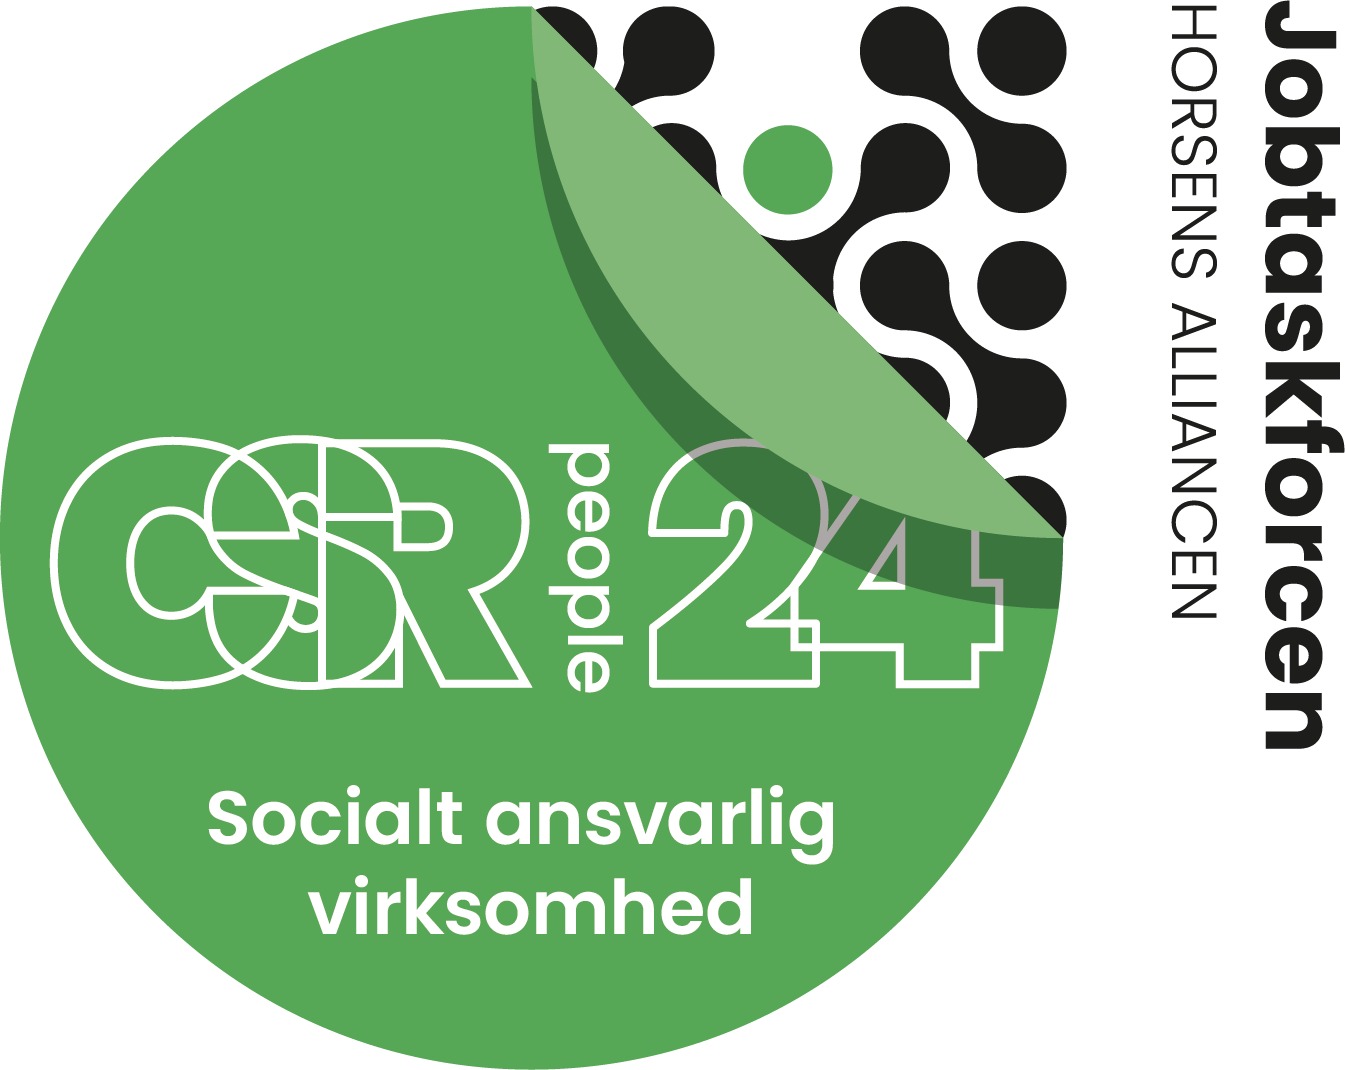 CSR People